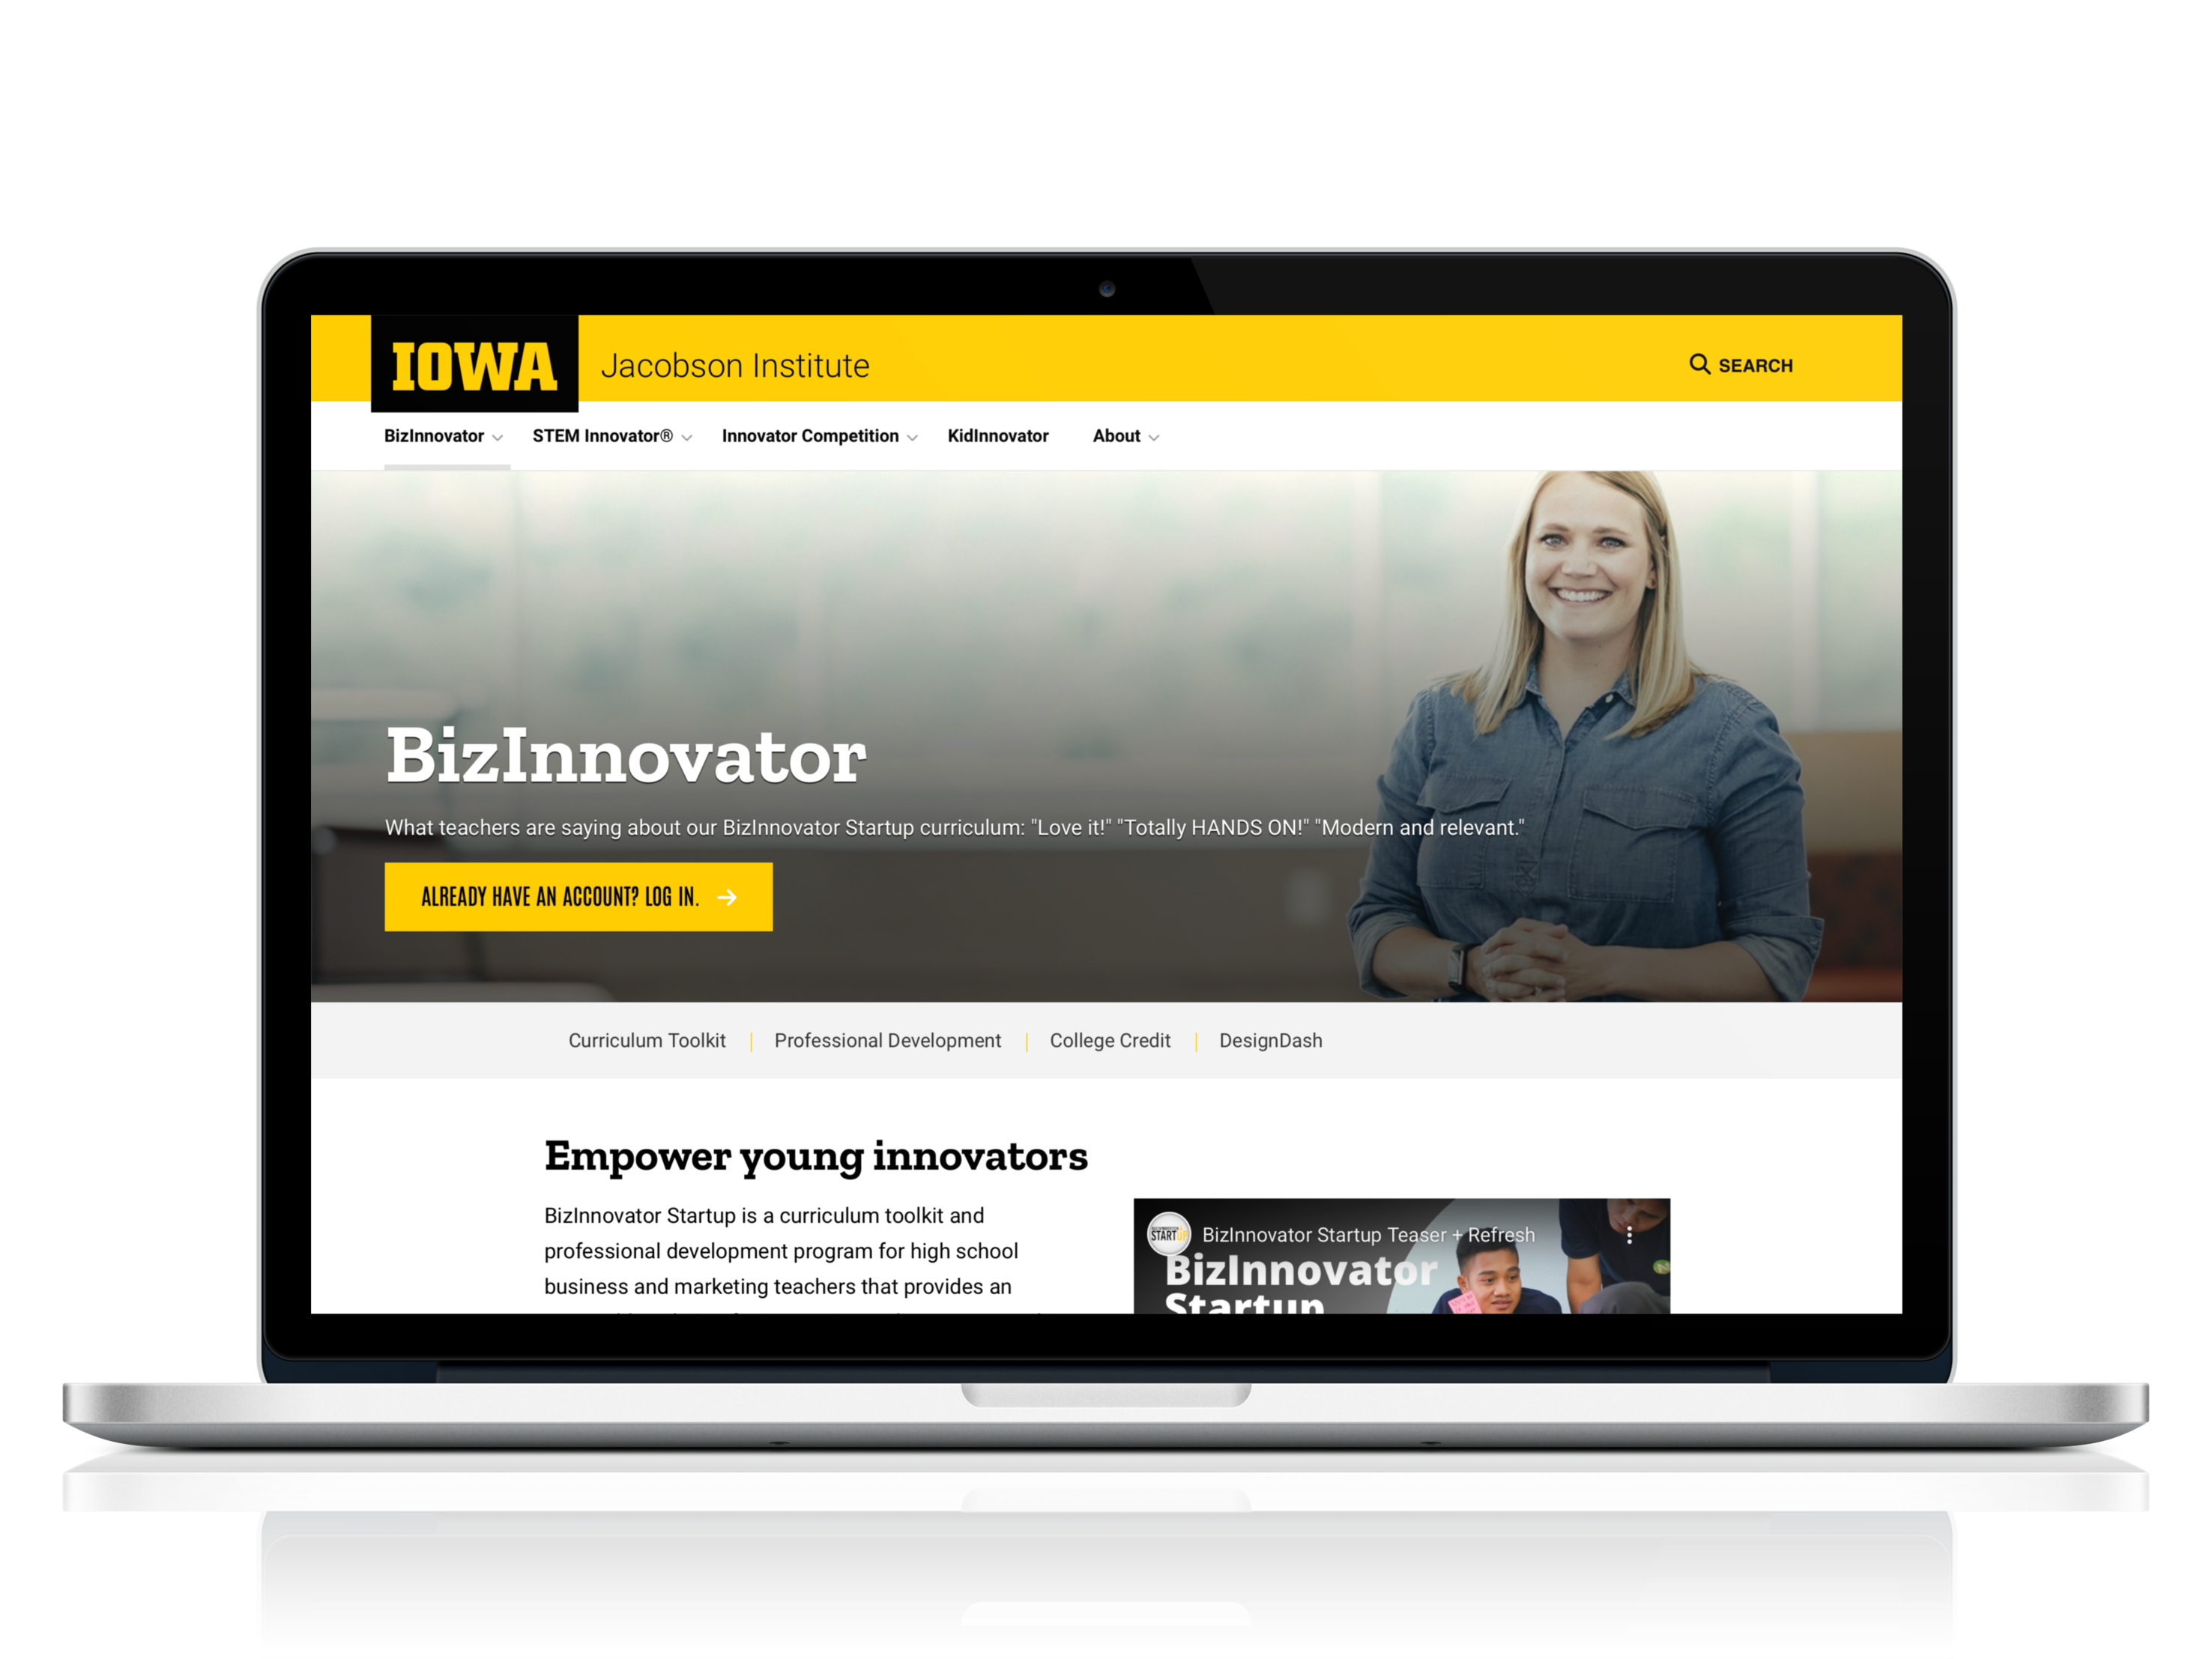 Mockup of Bizinnovator site shown in laptop